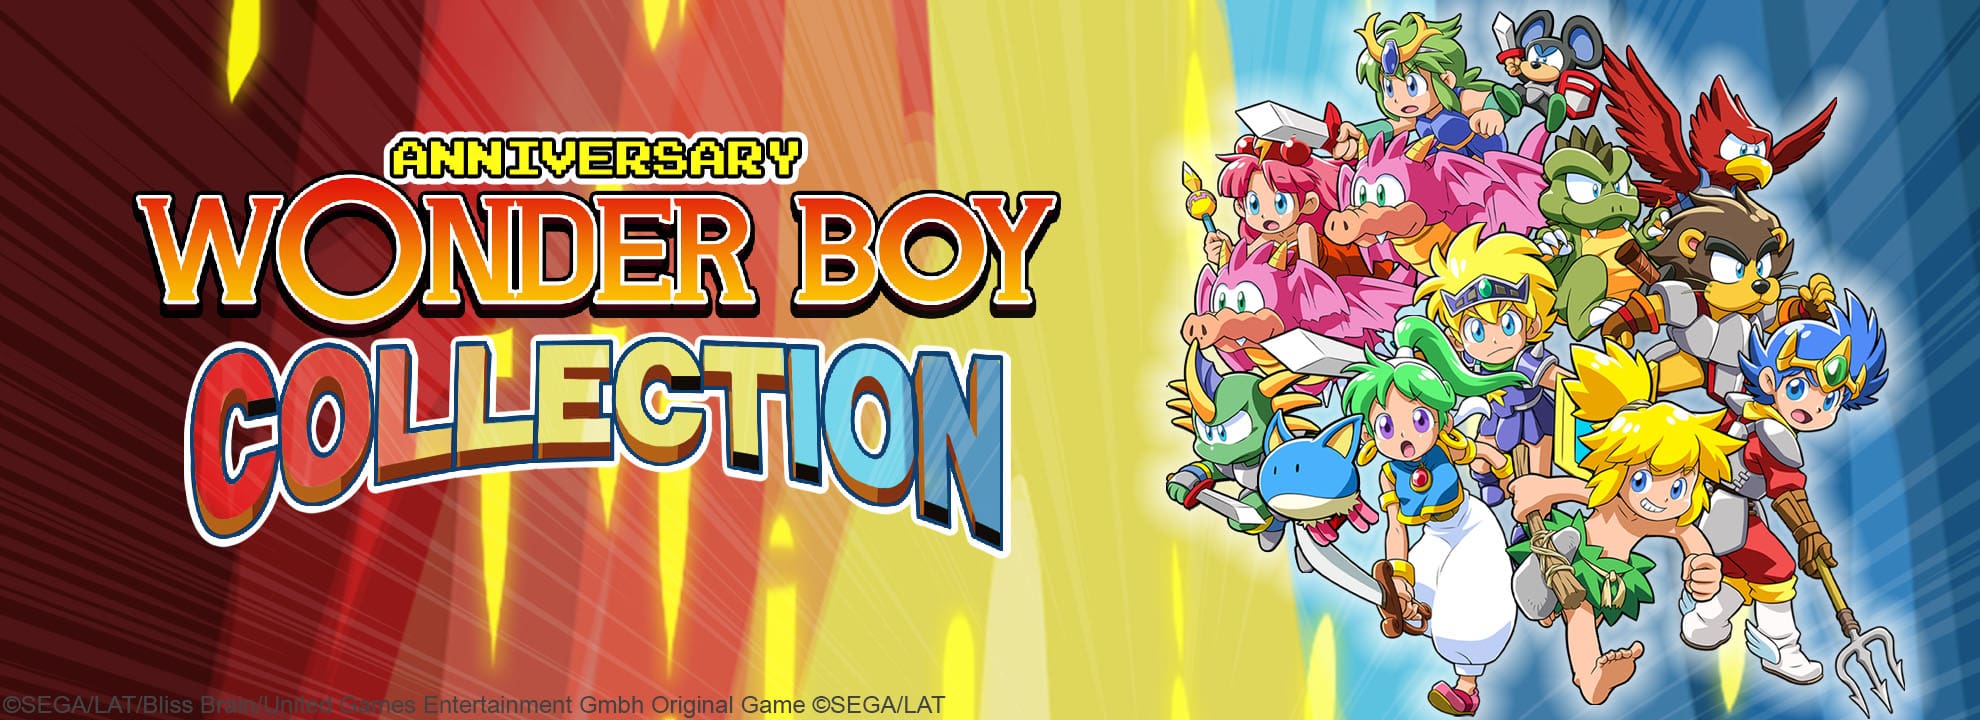 Wonder Boy Collection Anniversary